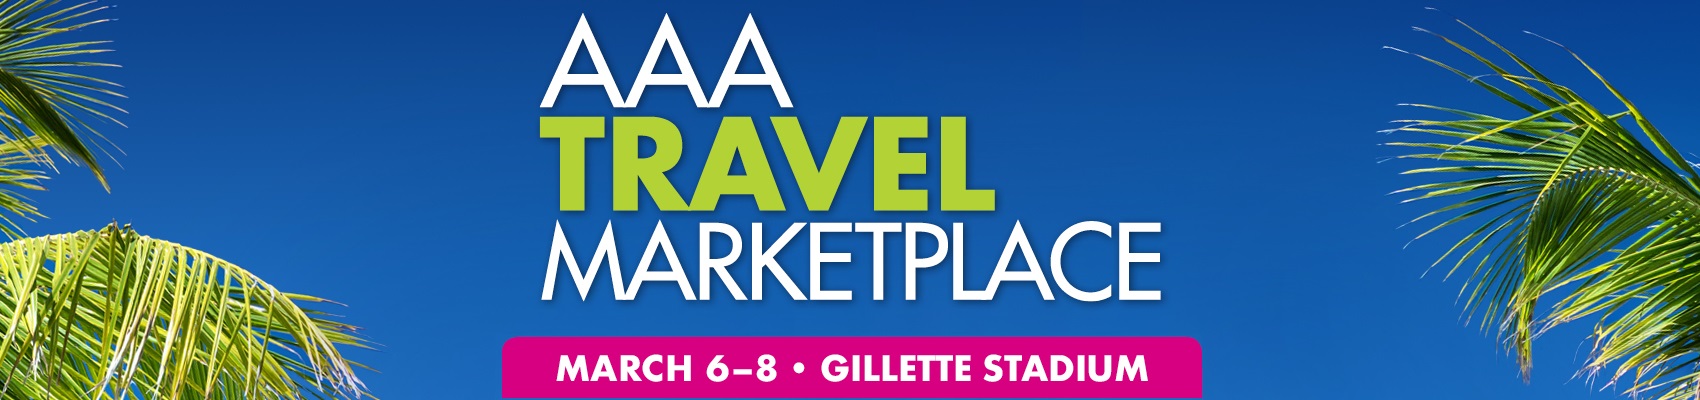 AAA Travel Marketplace 2020